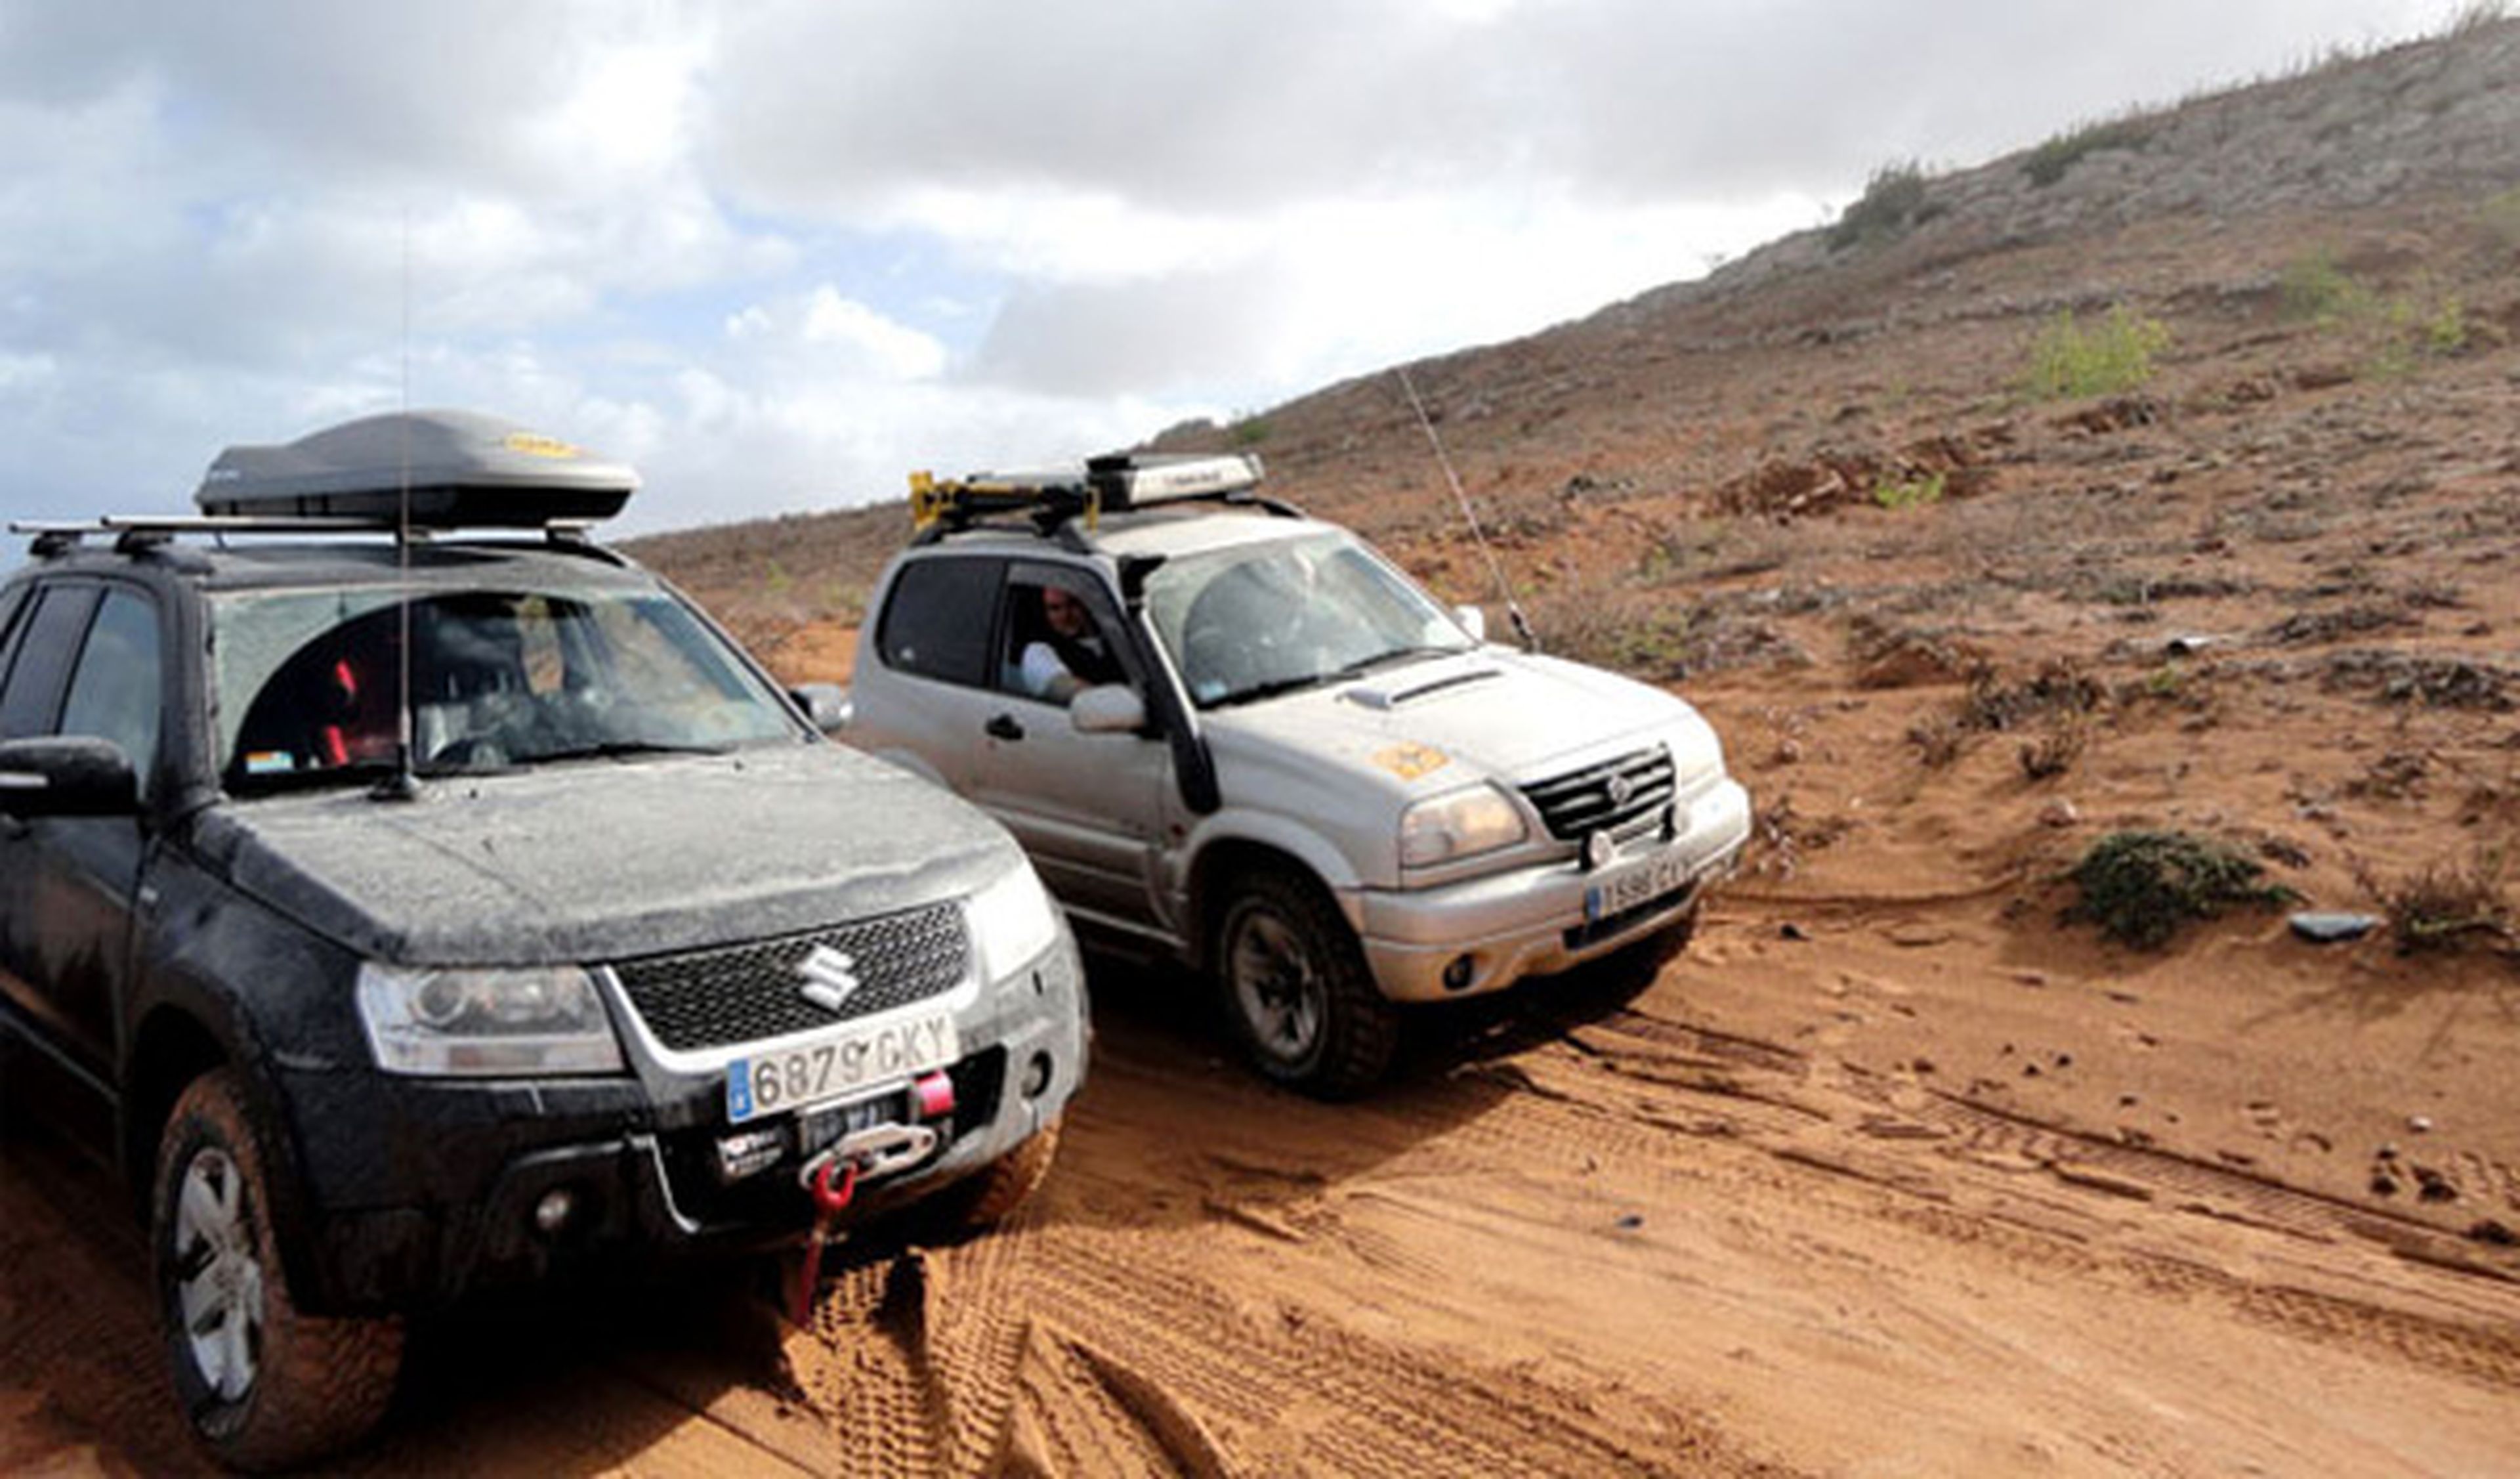 AUTO BILD 4x4 comienza la aventura marroquí